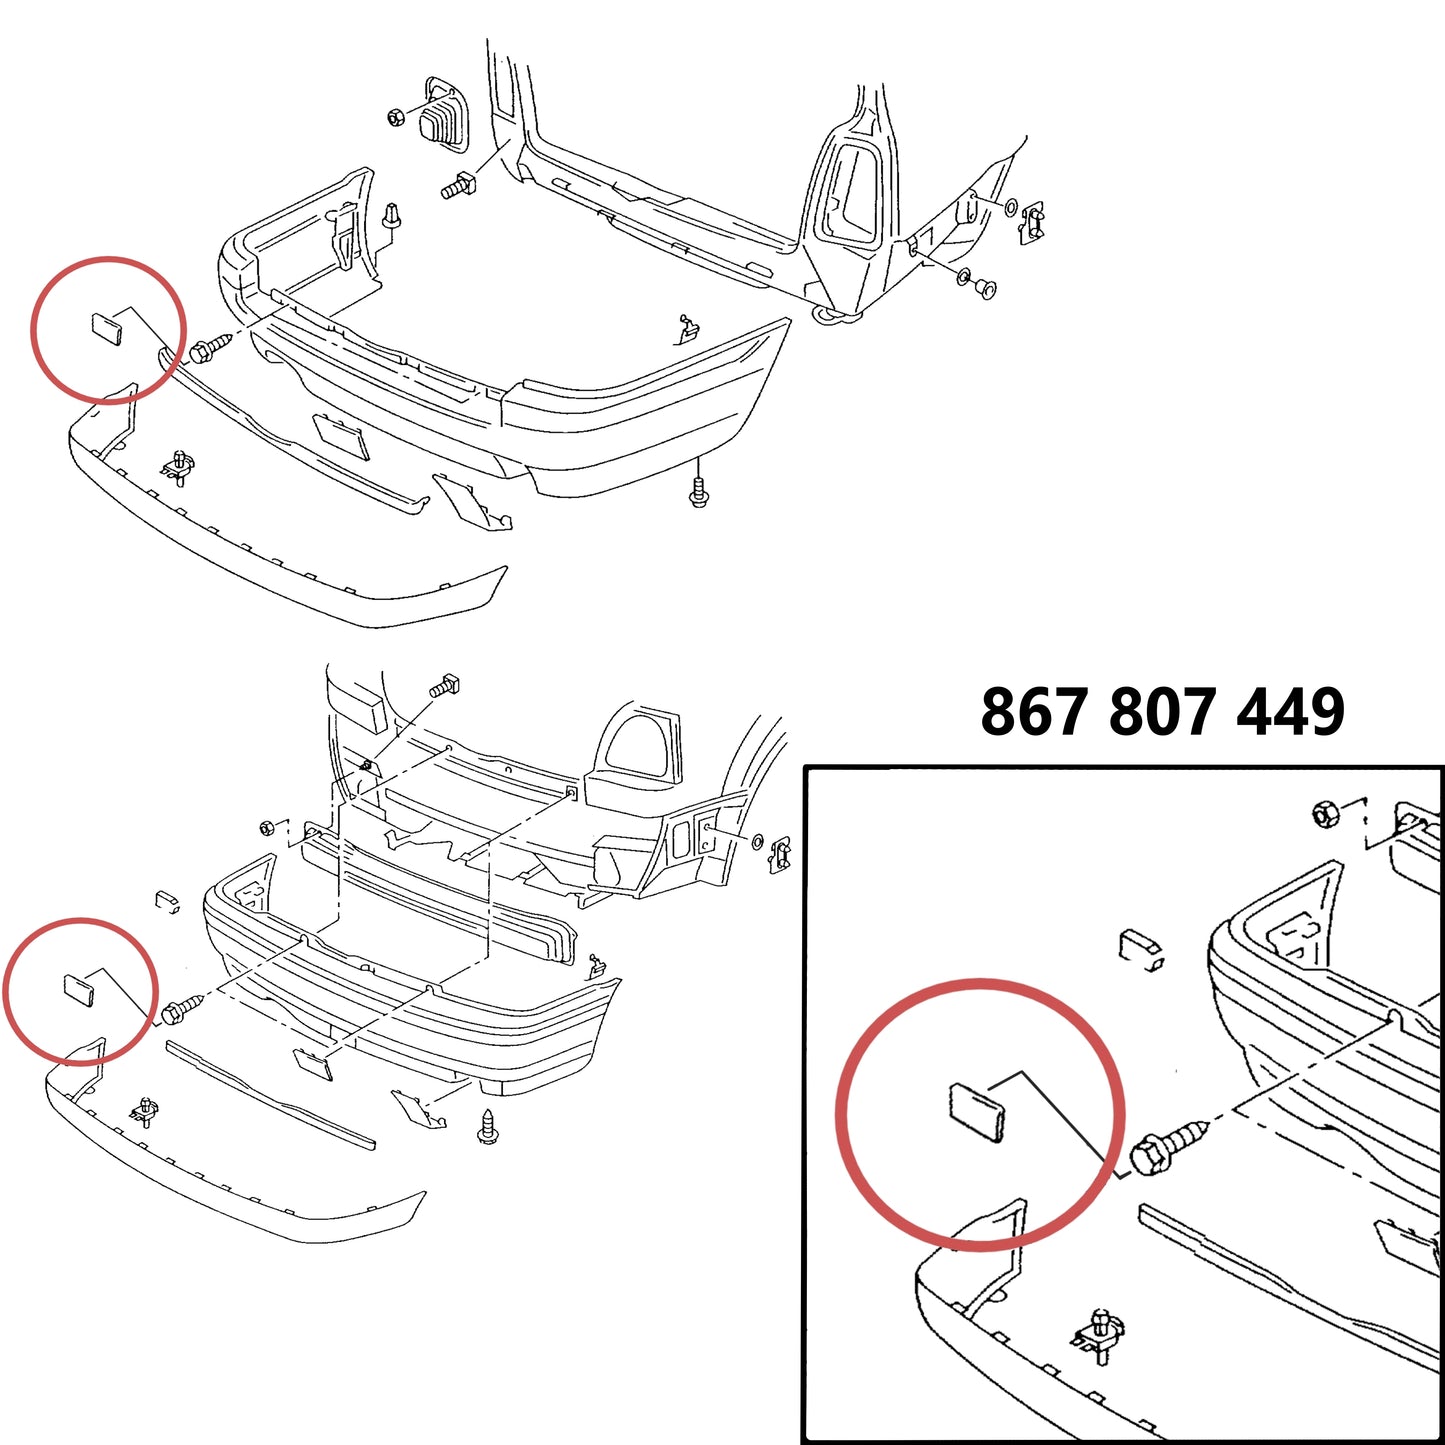 Rear bumper protection cap 867807449 / 867807449B41 (STL)